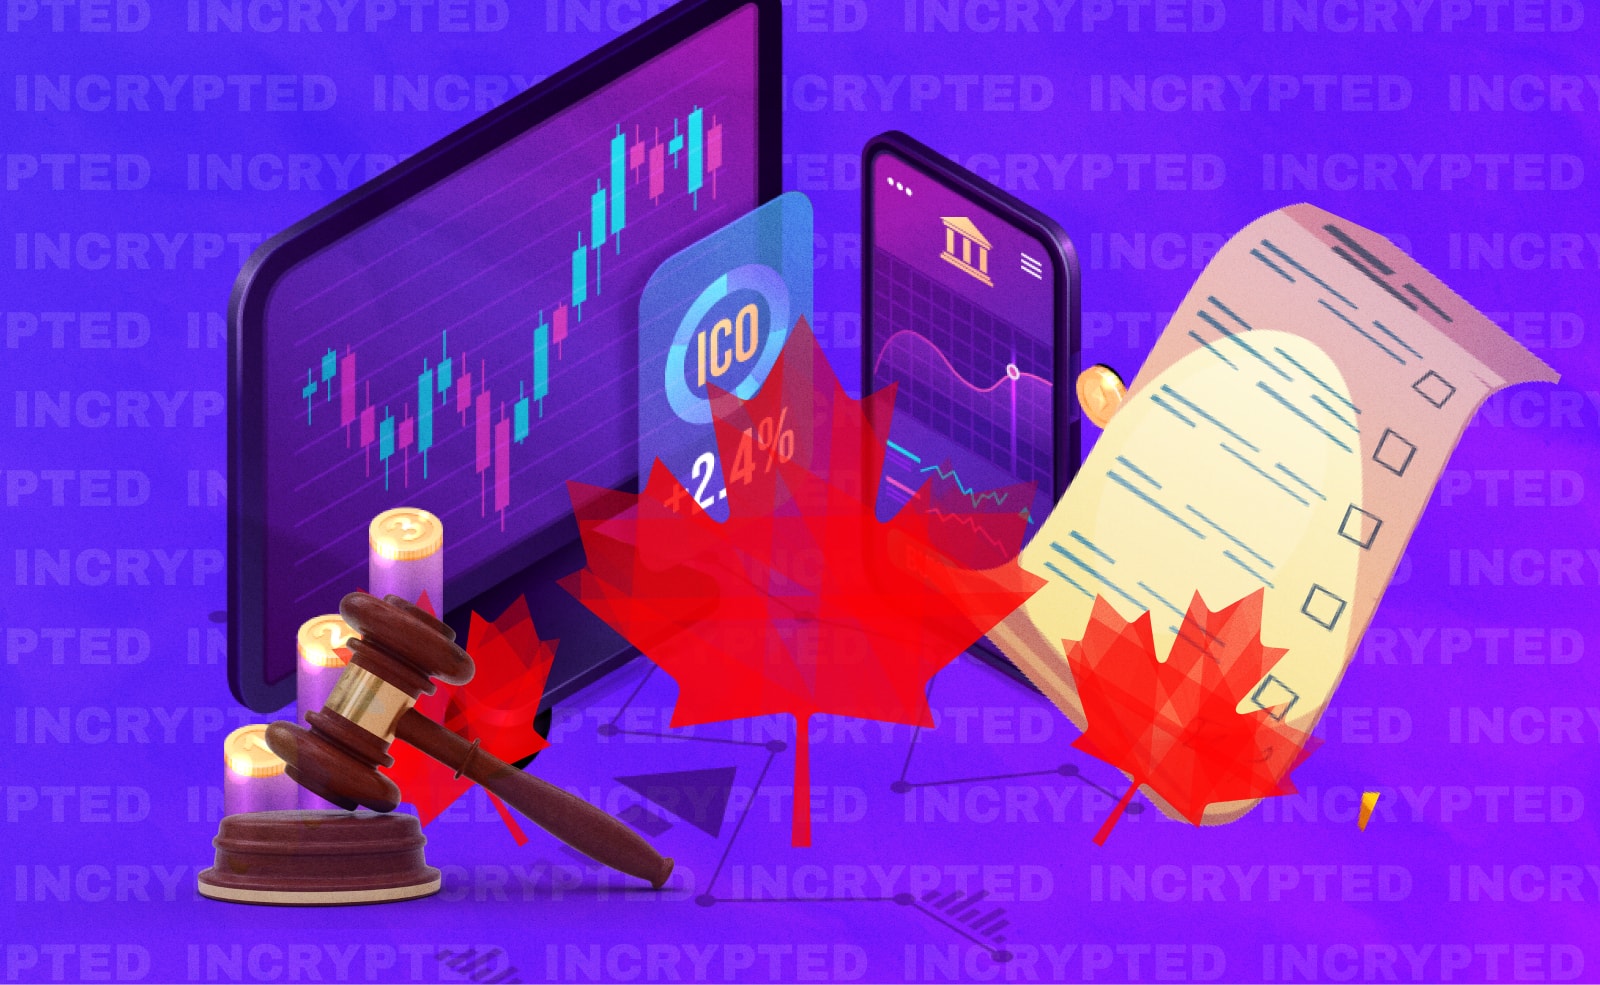 Канадский регулятор ужесточил требования к крипто-биржам Теперь им запрещено предлагать маржинальную торговлю и продукты с кредитным плечом